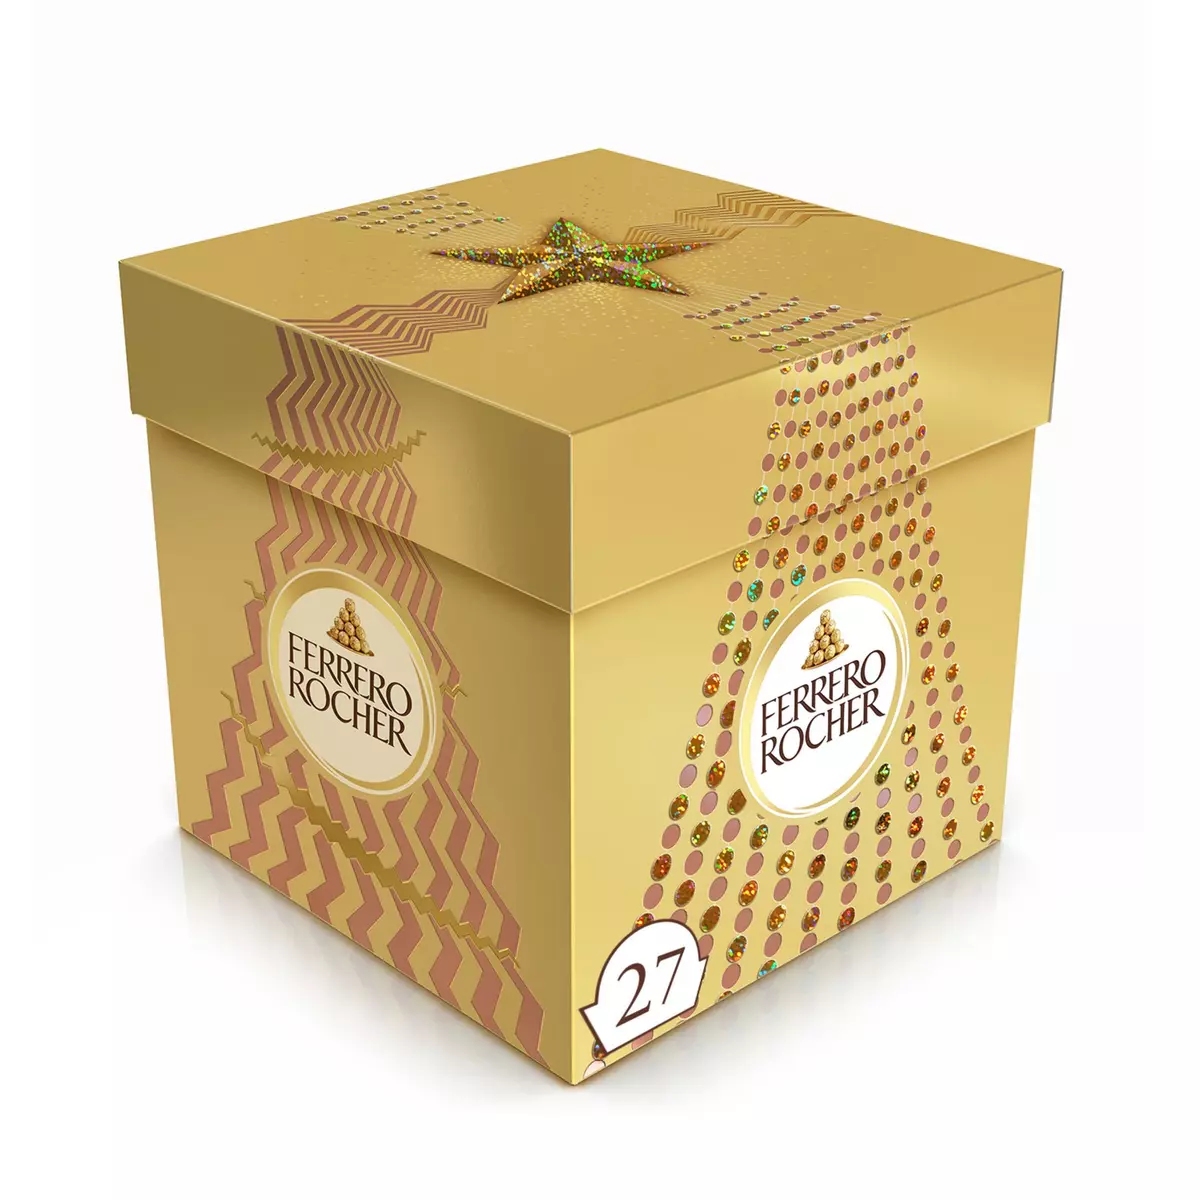 FERRERO ROCHER Fines gaufrettes de chocolat au lait et noisettes 27 pièces 338g